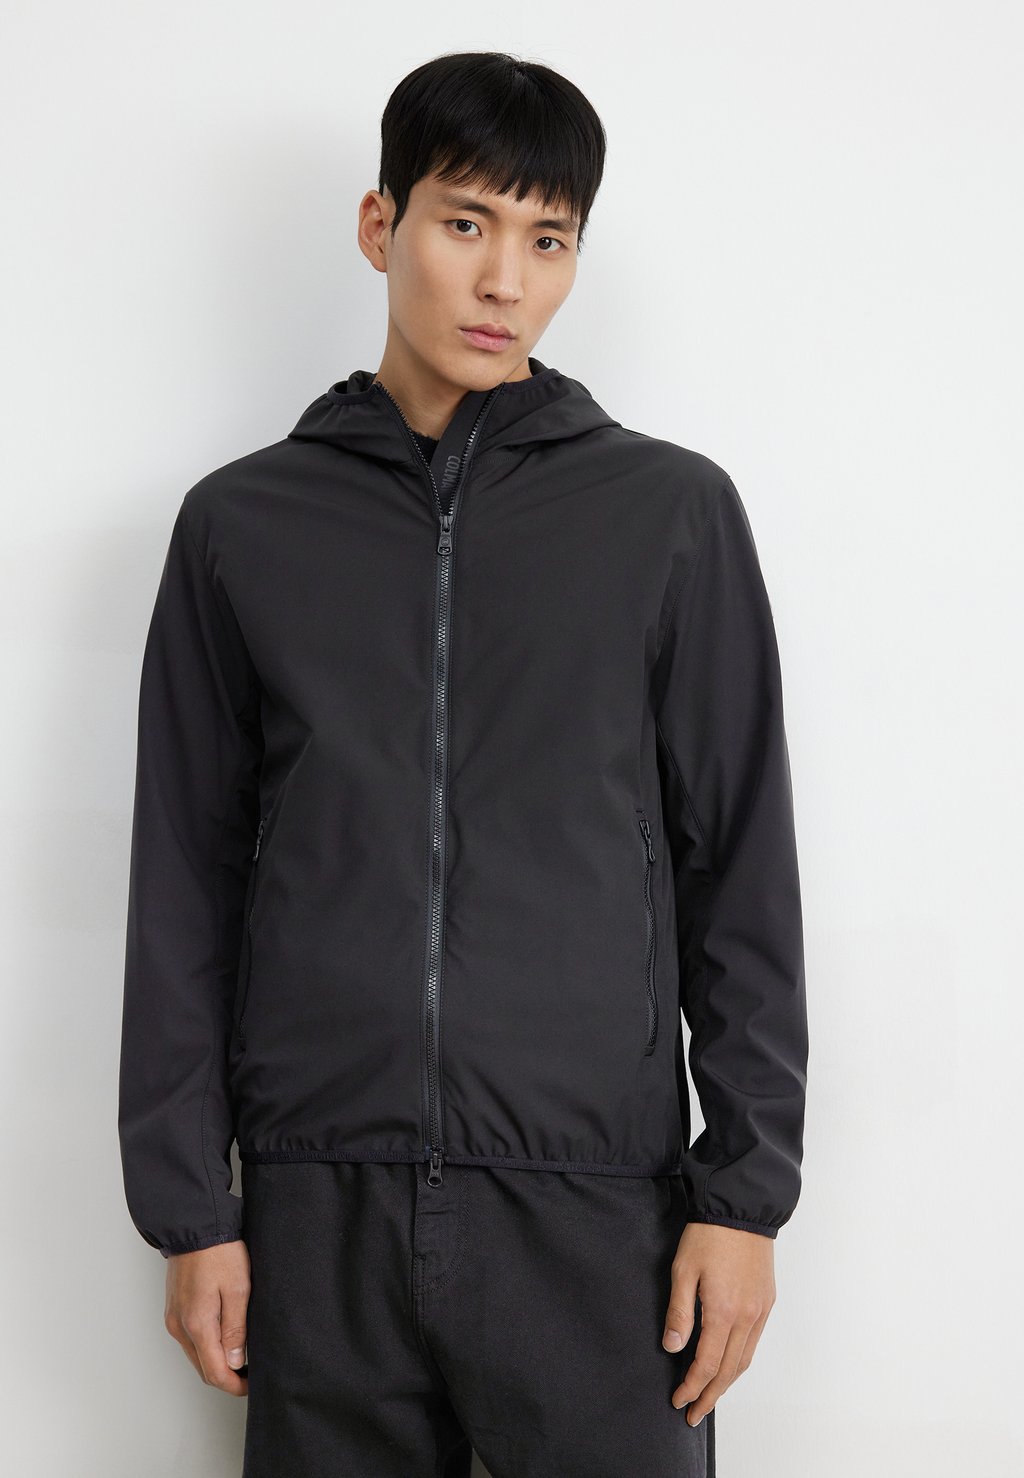 цена Легкая куртка Colmar Originals, черная